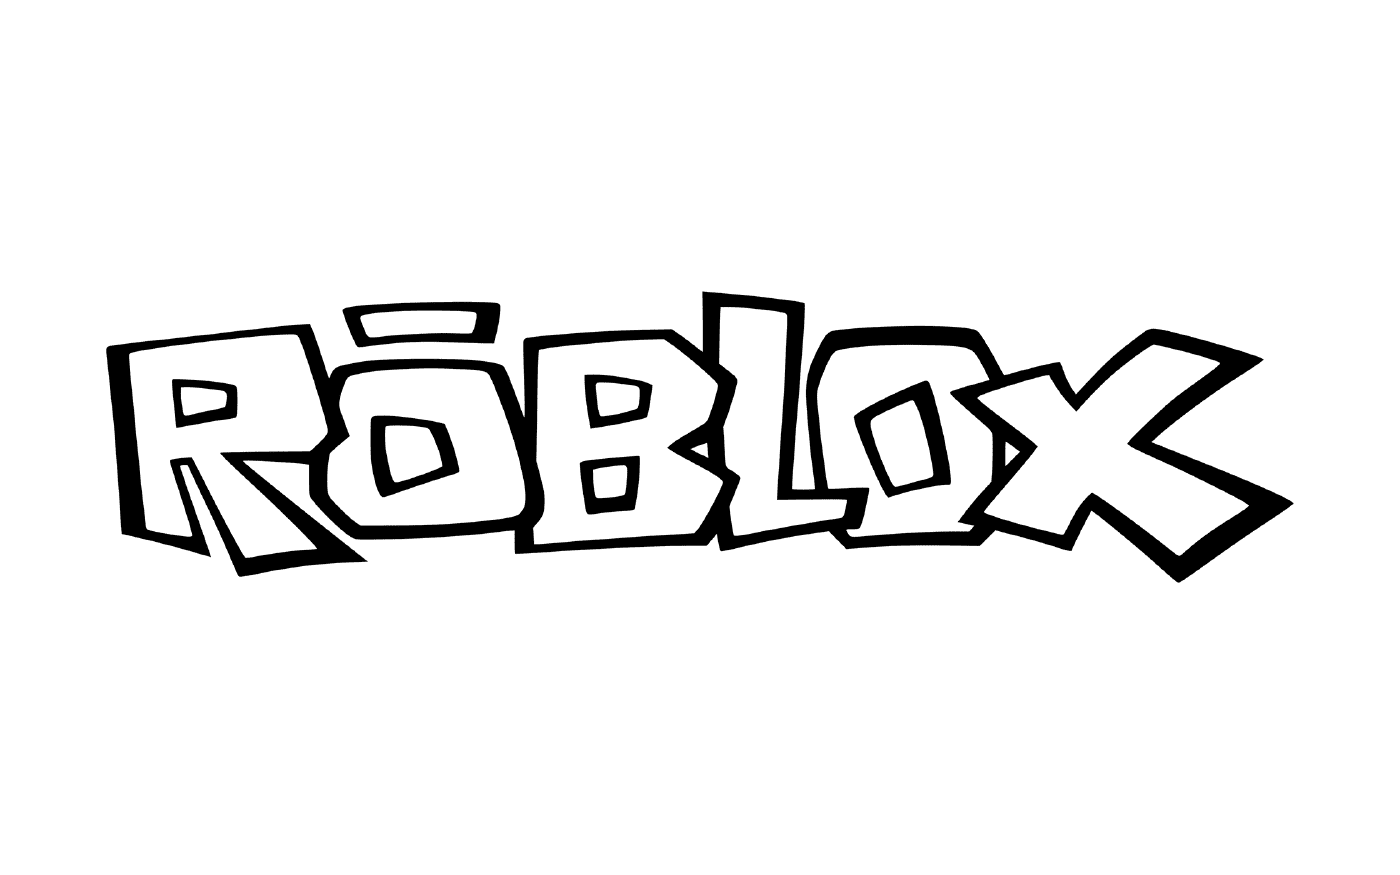  Fun Roblox logo 